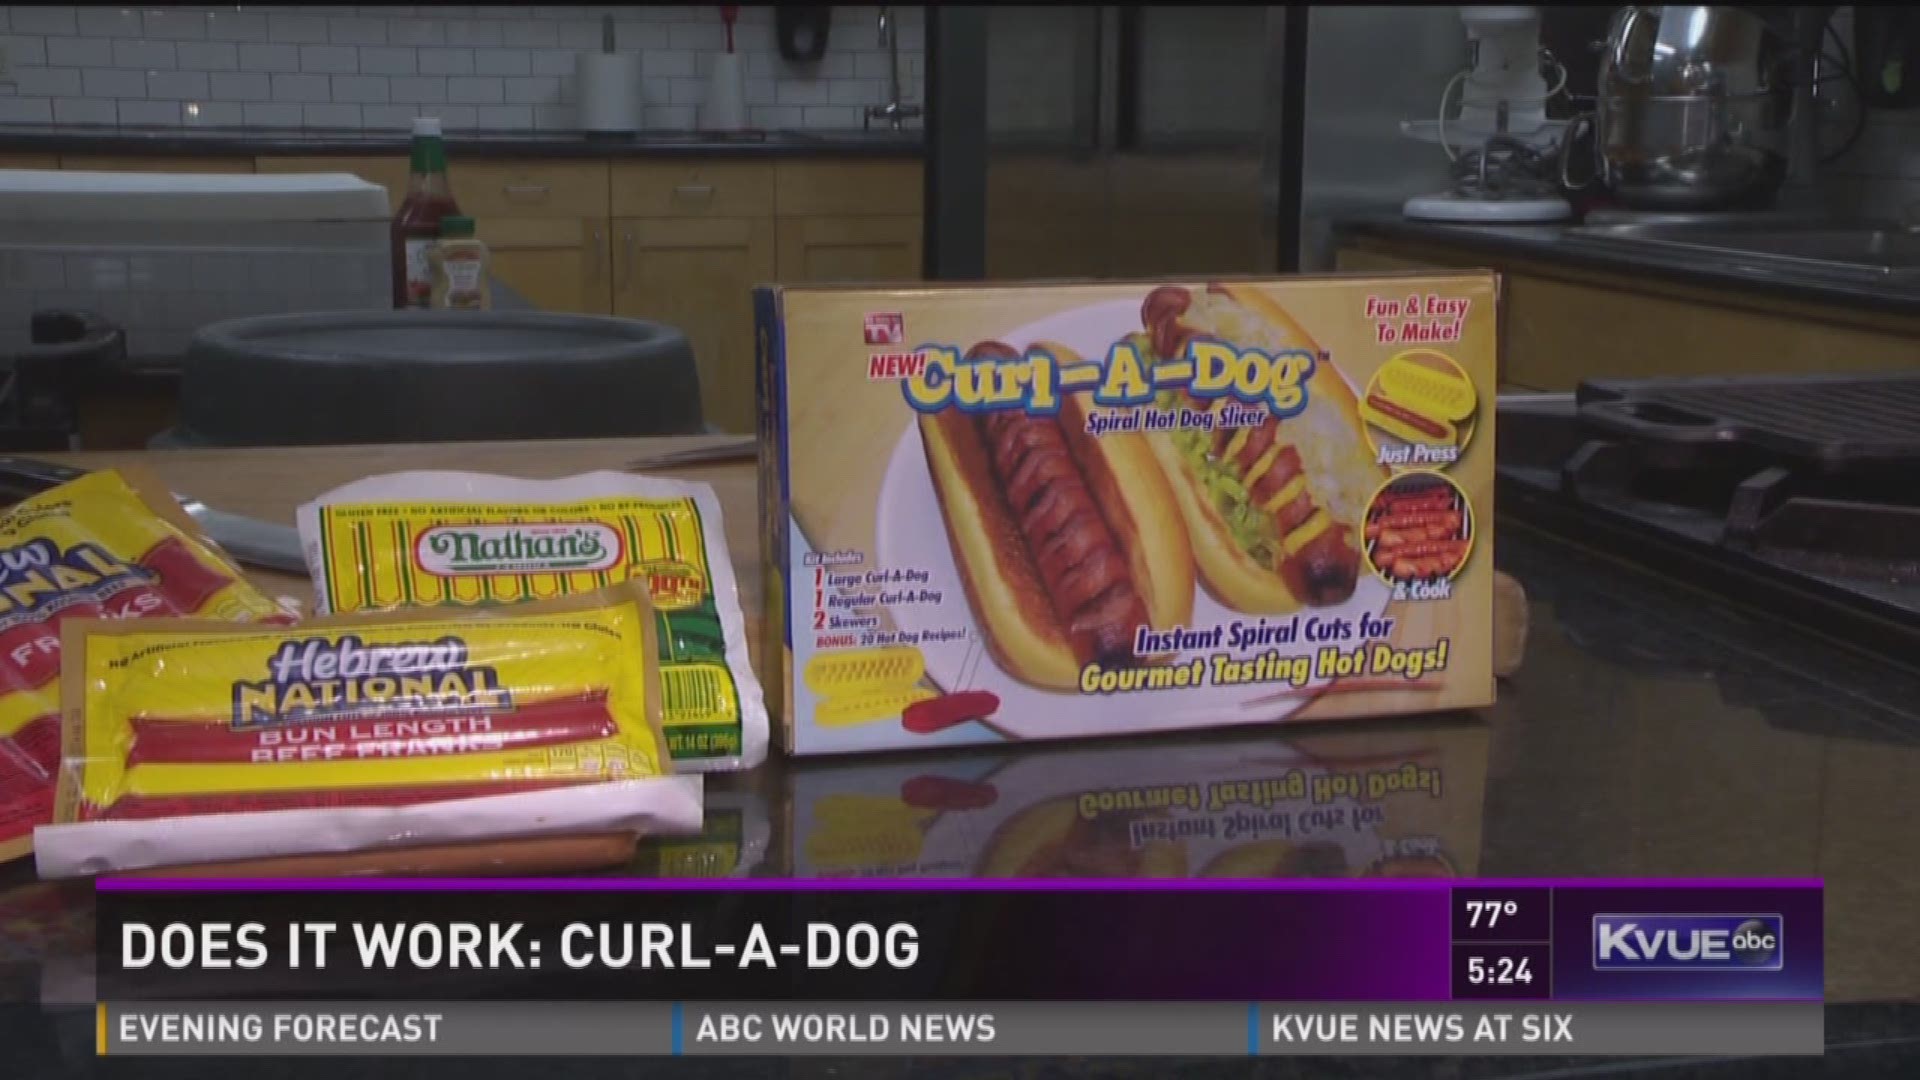 Does It Work: Curl-A-Dog Spiral Hot Dog Slicer